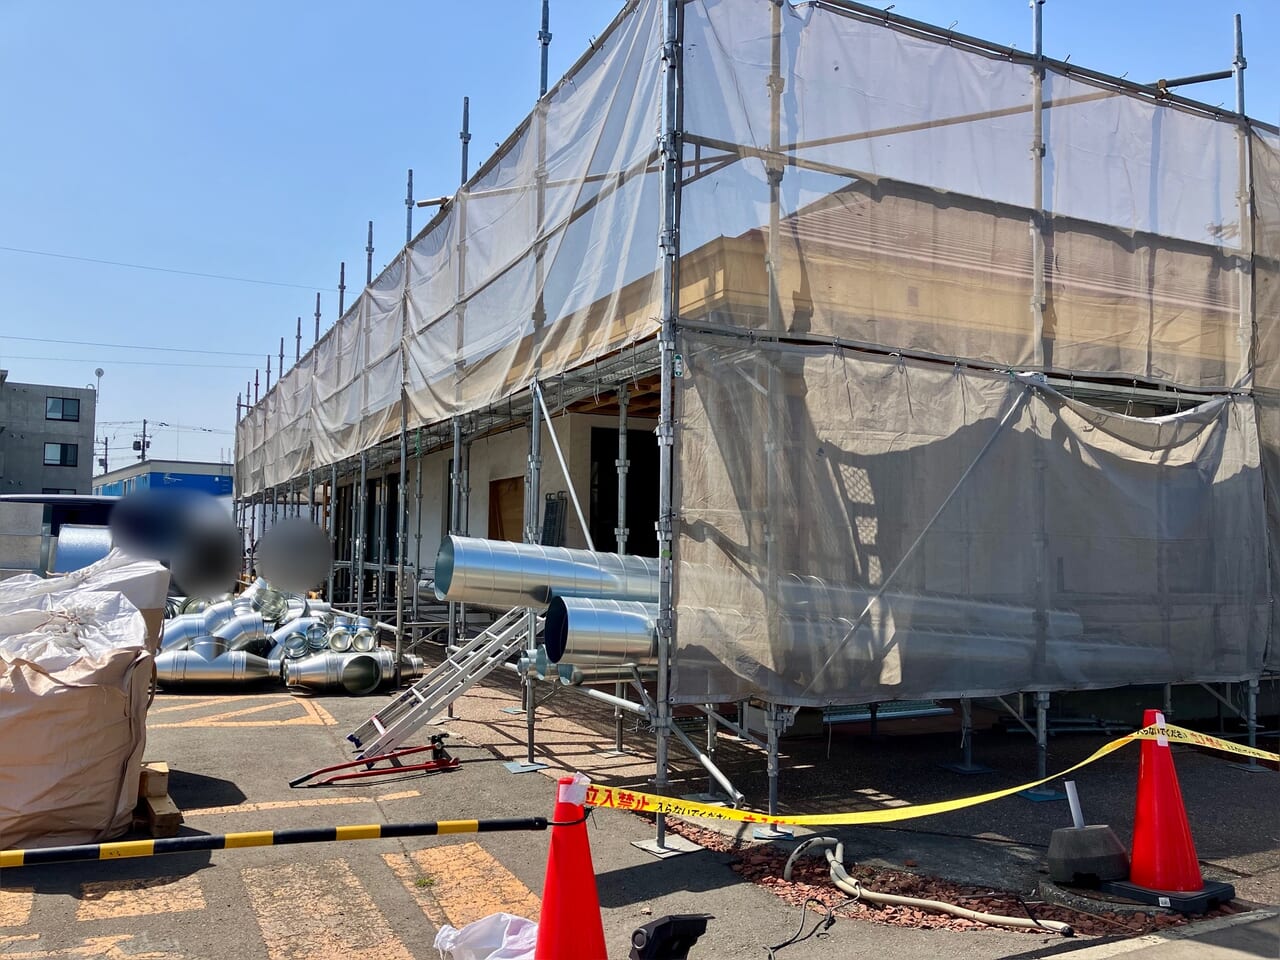 2024年に閉店した環状通沿いの「ココス札幌本町店」跡地で改装工事が始まっていますよ。